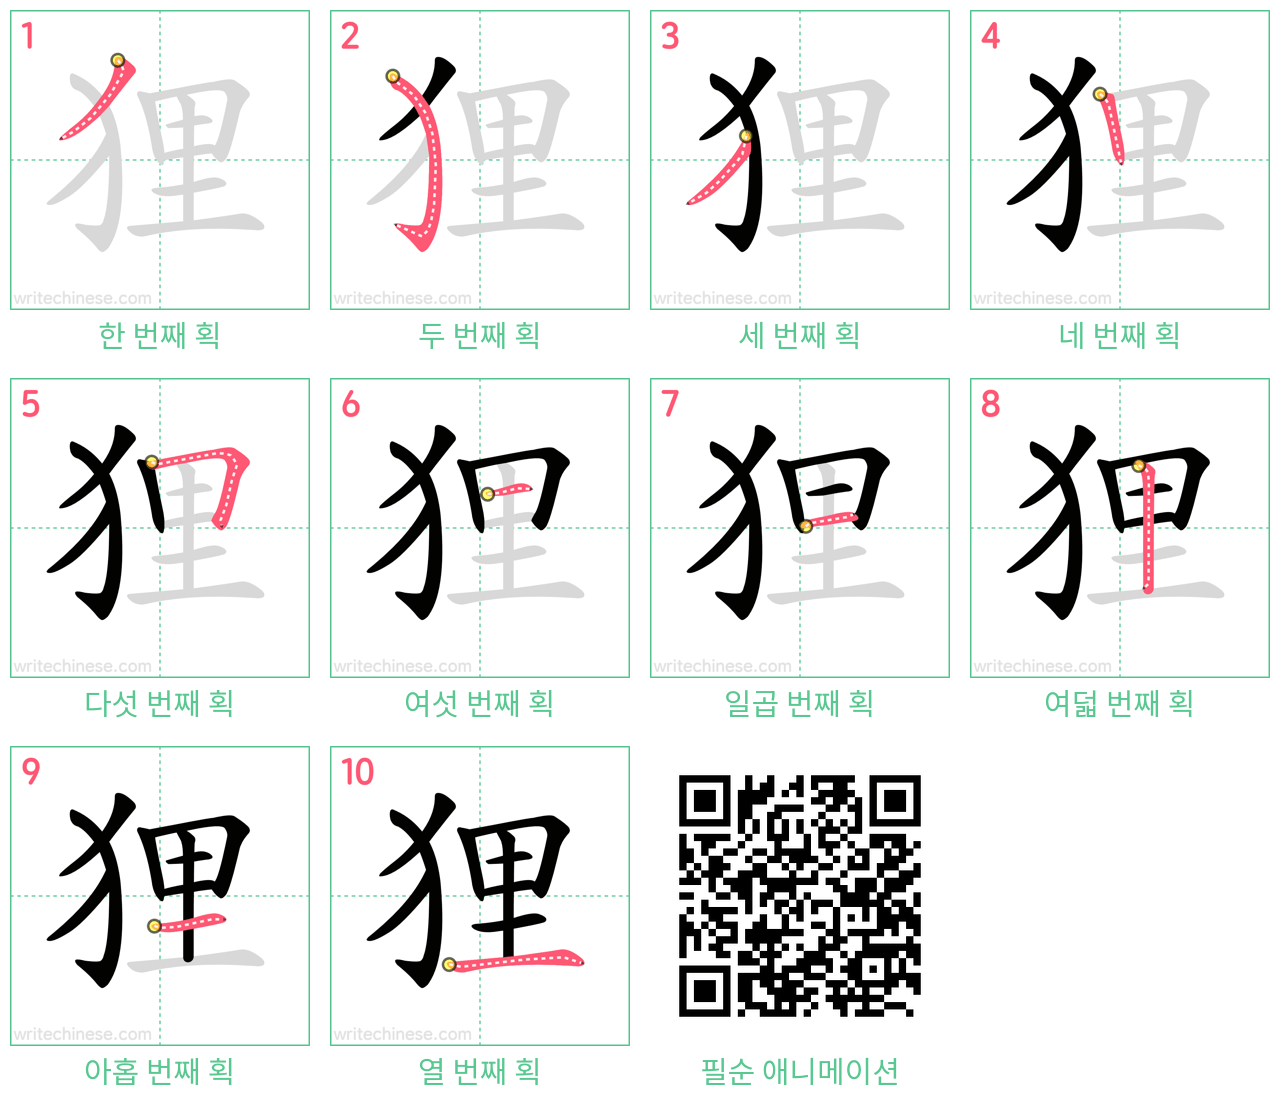 狸 step-by-step stroke order diagrams